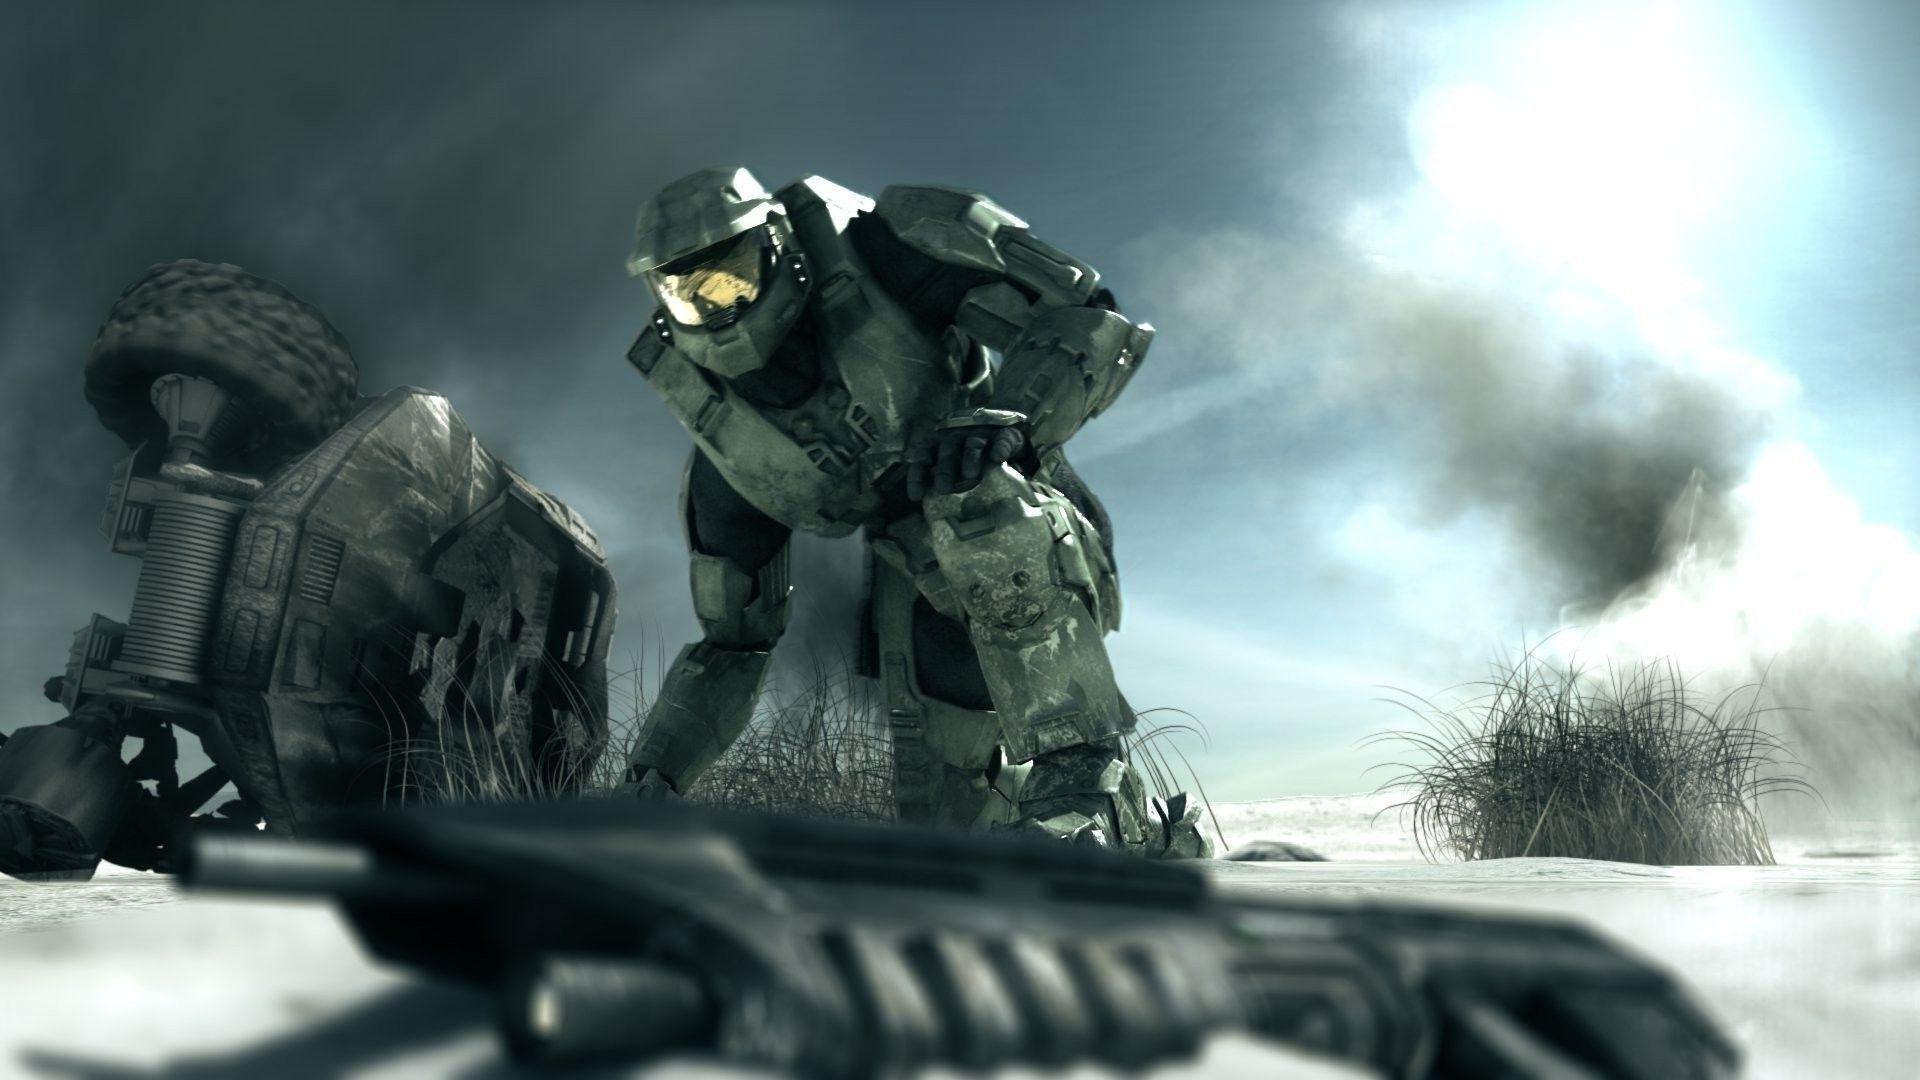 تصویر مسترچیف در حال نگاه به یک شاتگان در تریلر بازی Halo 3